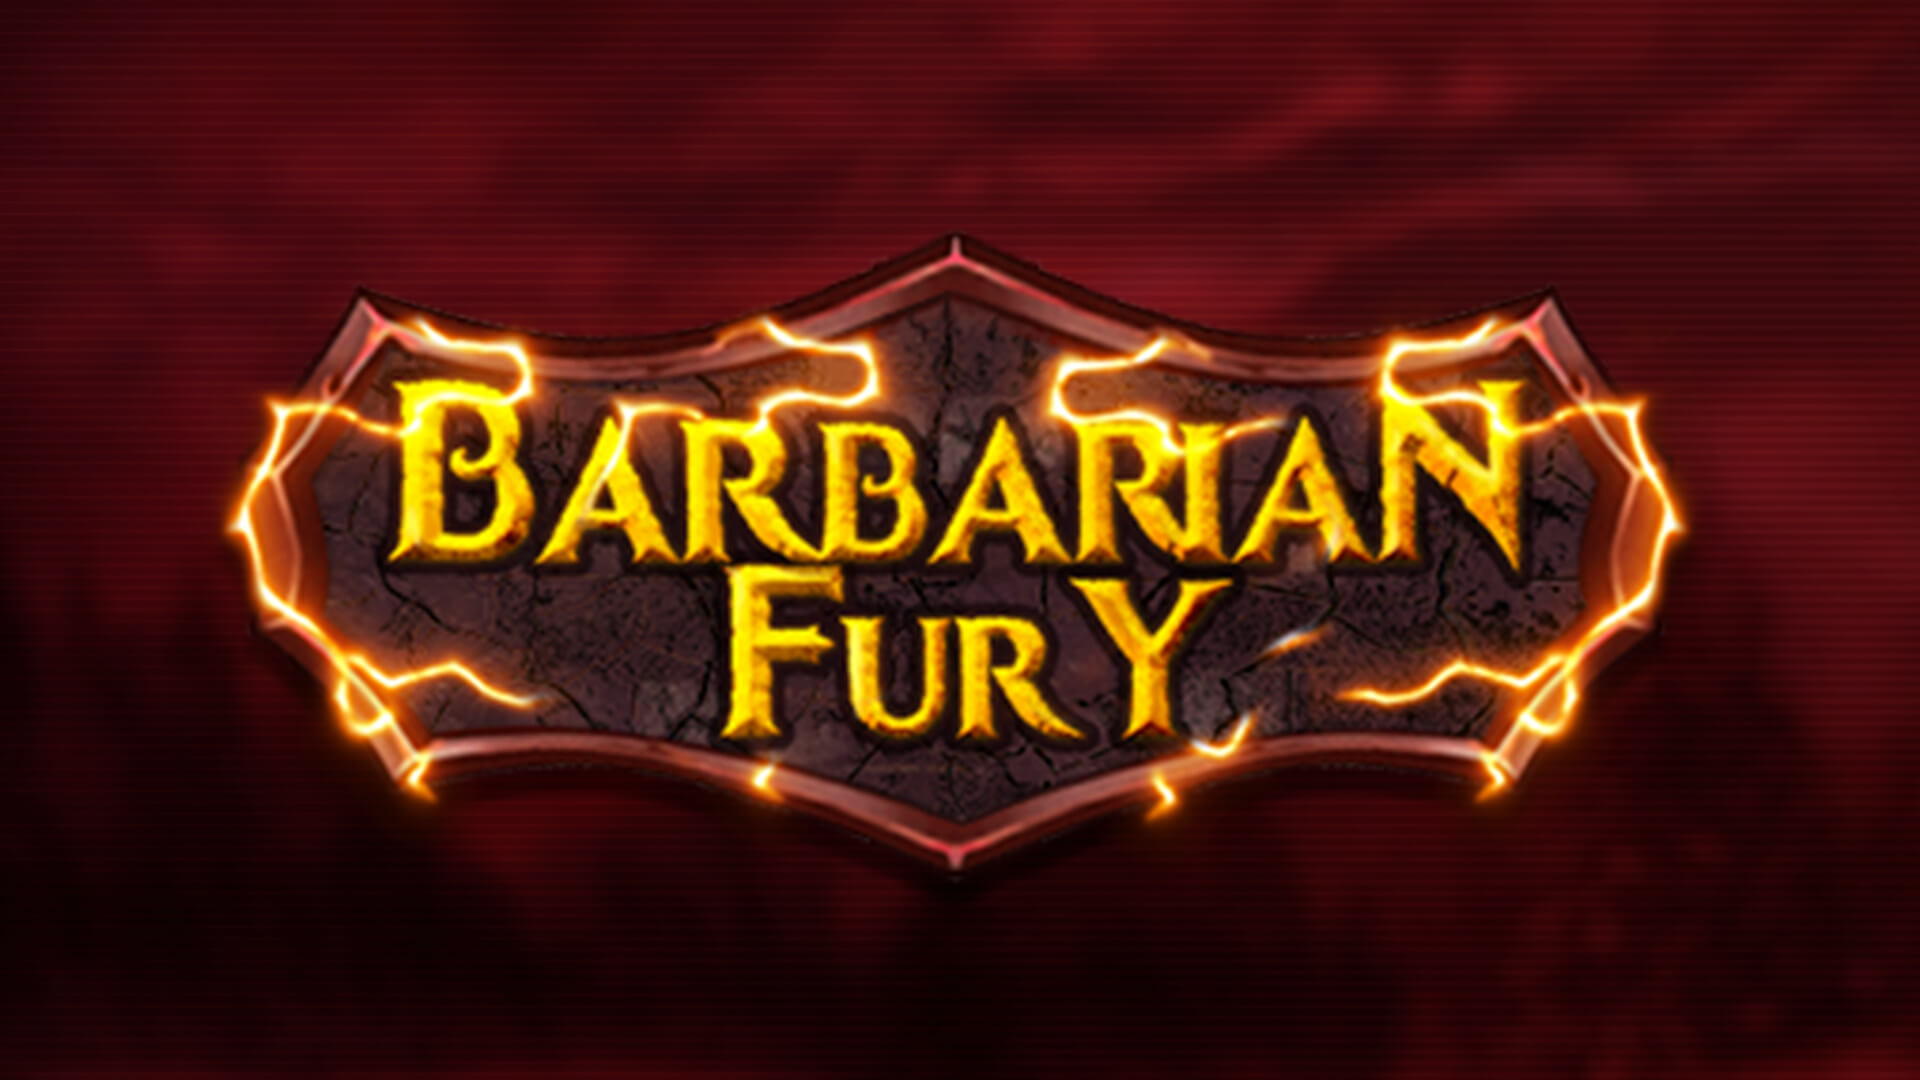 Barbarian fury